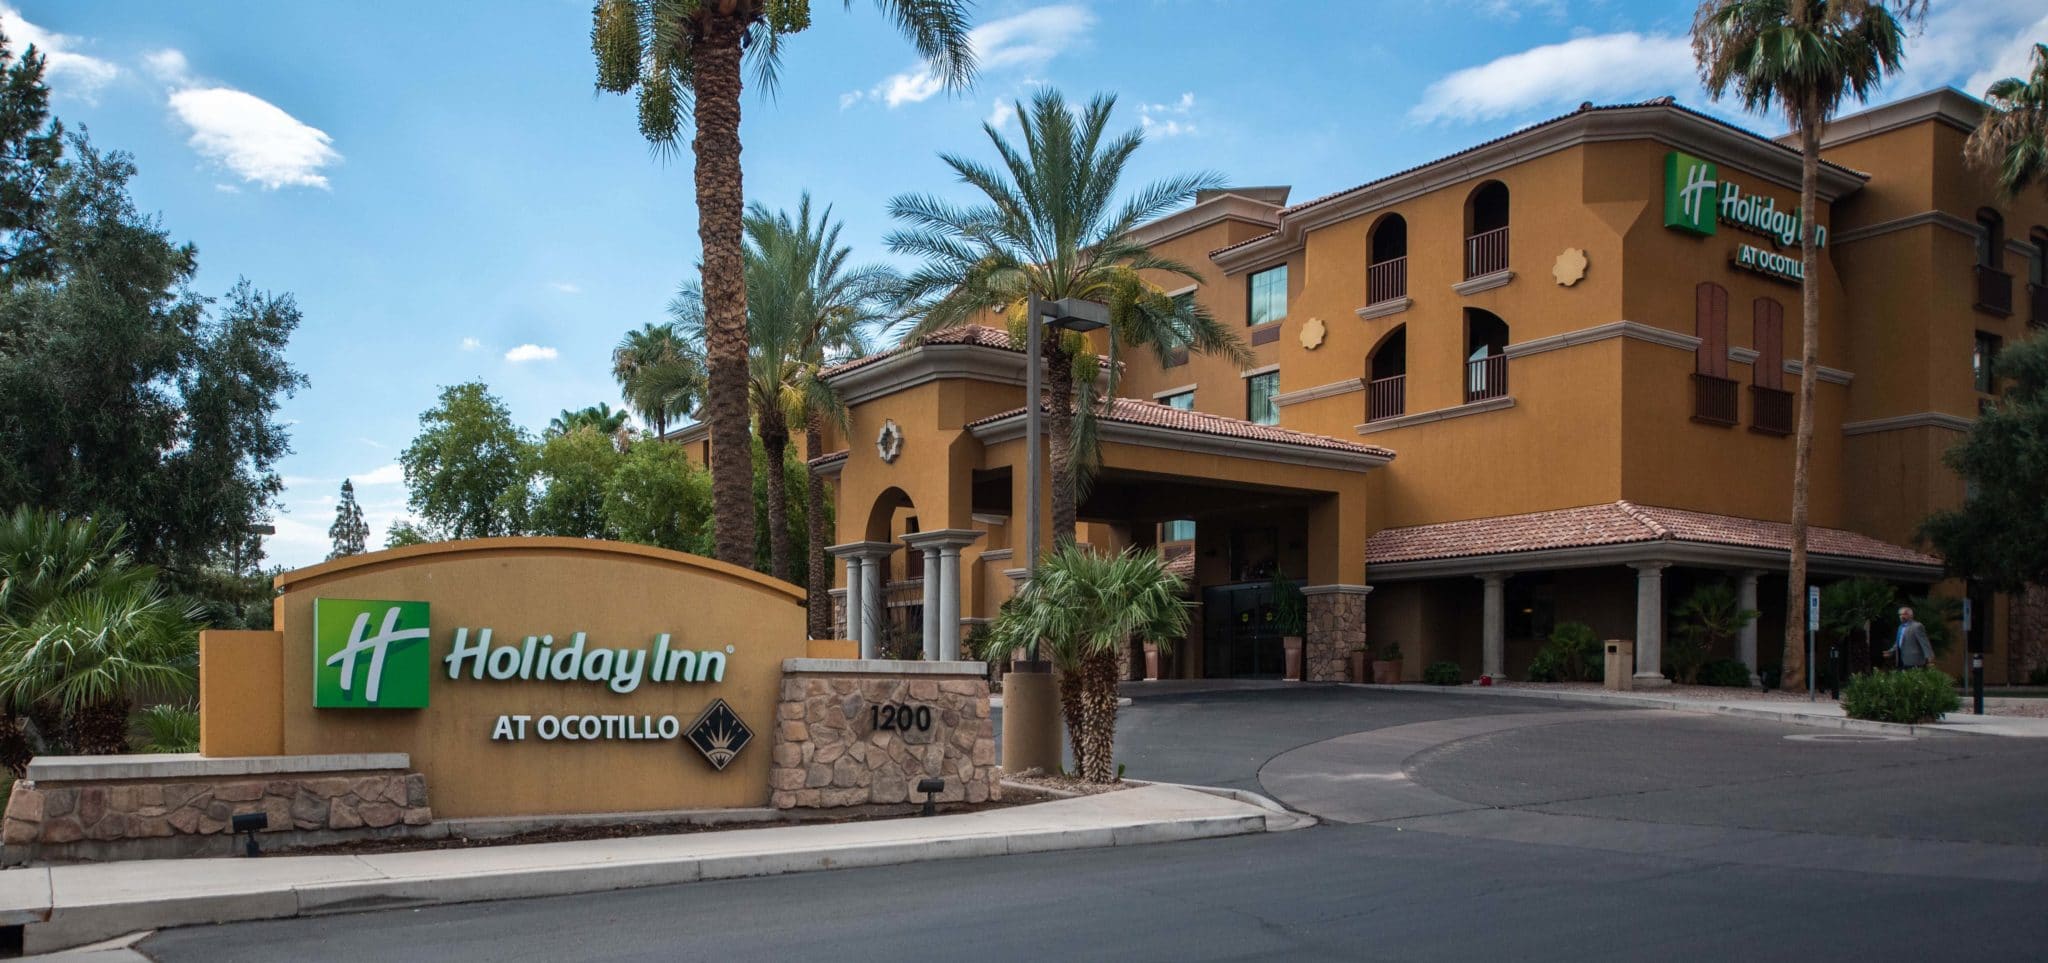 Holiday Inn Ocotillo in Chandler, AZ